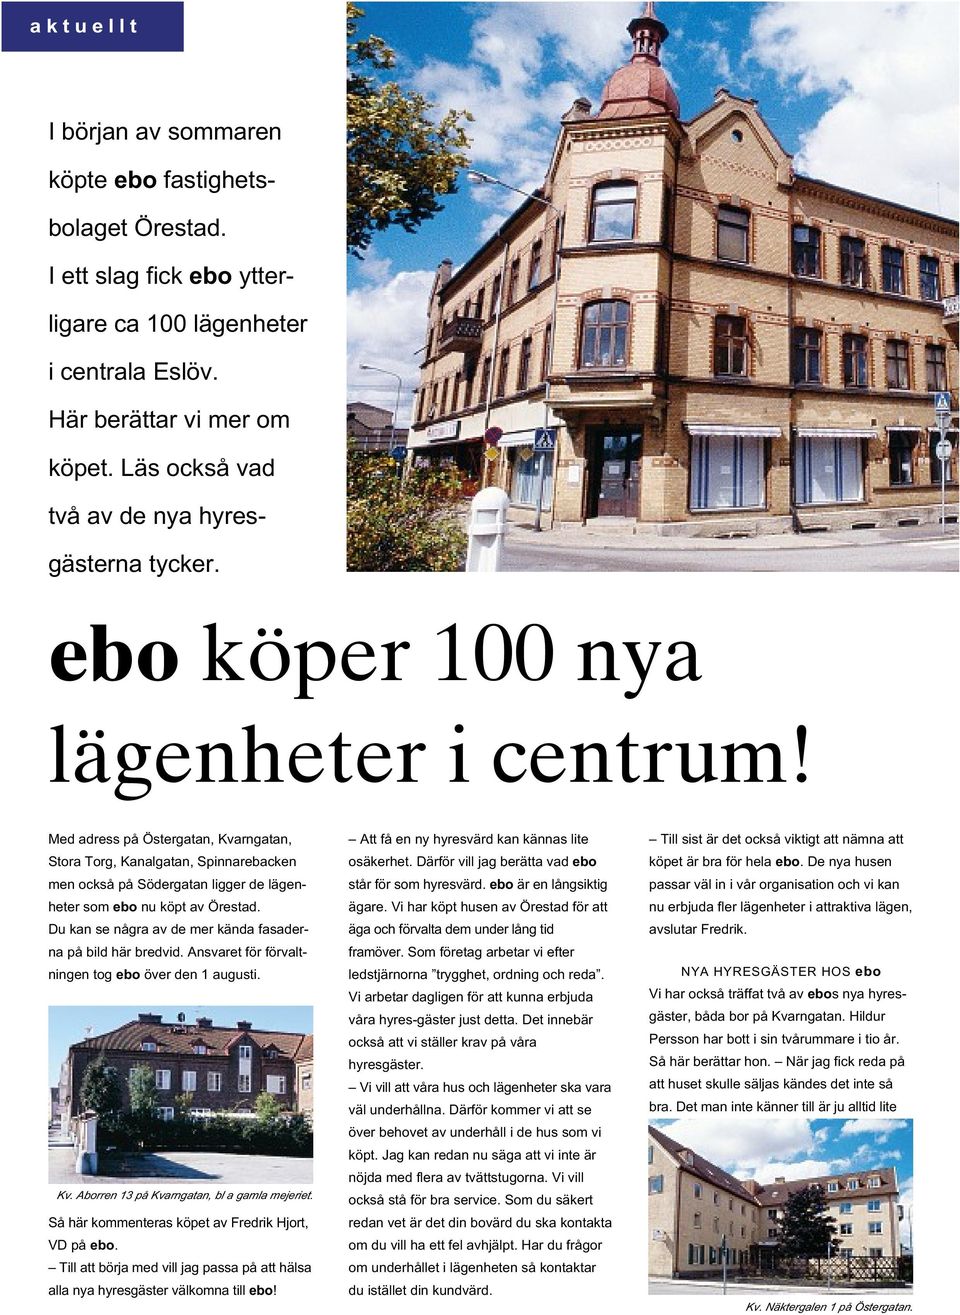 Med adress på Östergatan, Kvarngatan, Stora Torg, Kanalgatan, Spinnarebacken men också påsödergatan ligger de lägenheter som ebo nu köpt av Örestad.